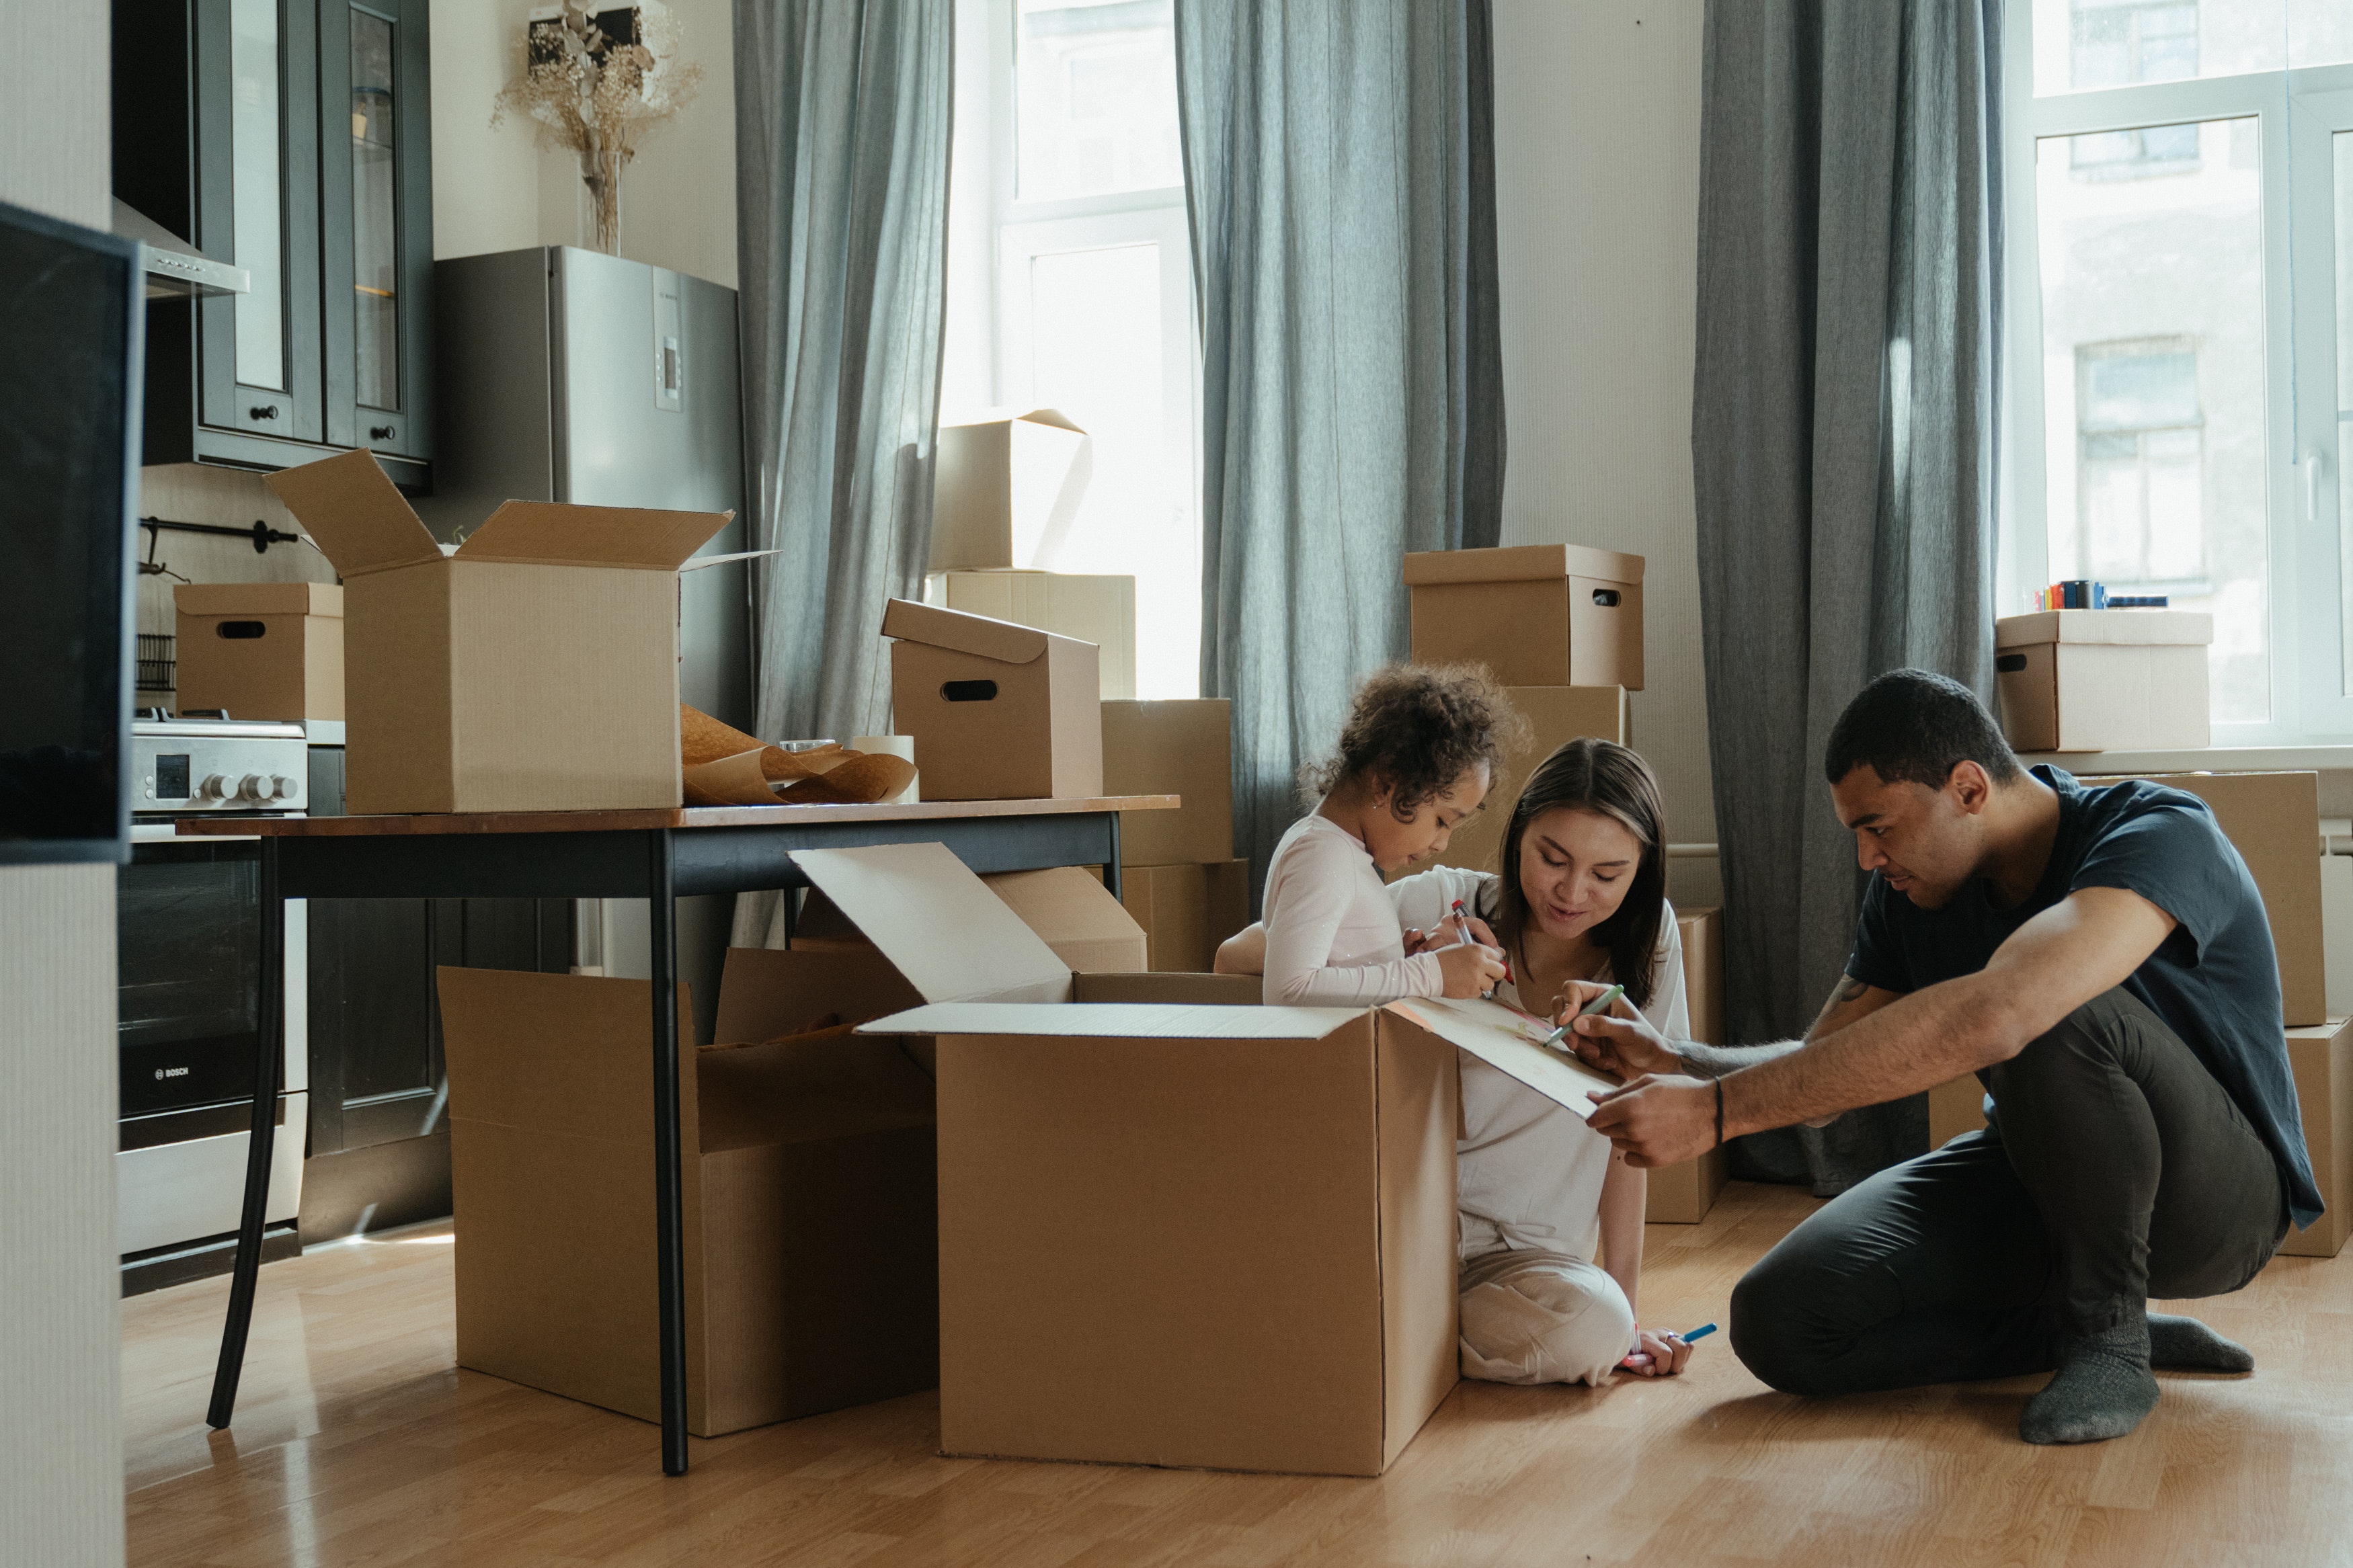 déménagement : le rangement et l'emballage de vos affaires